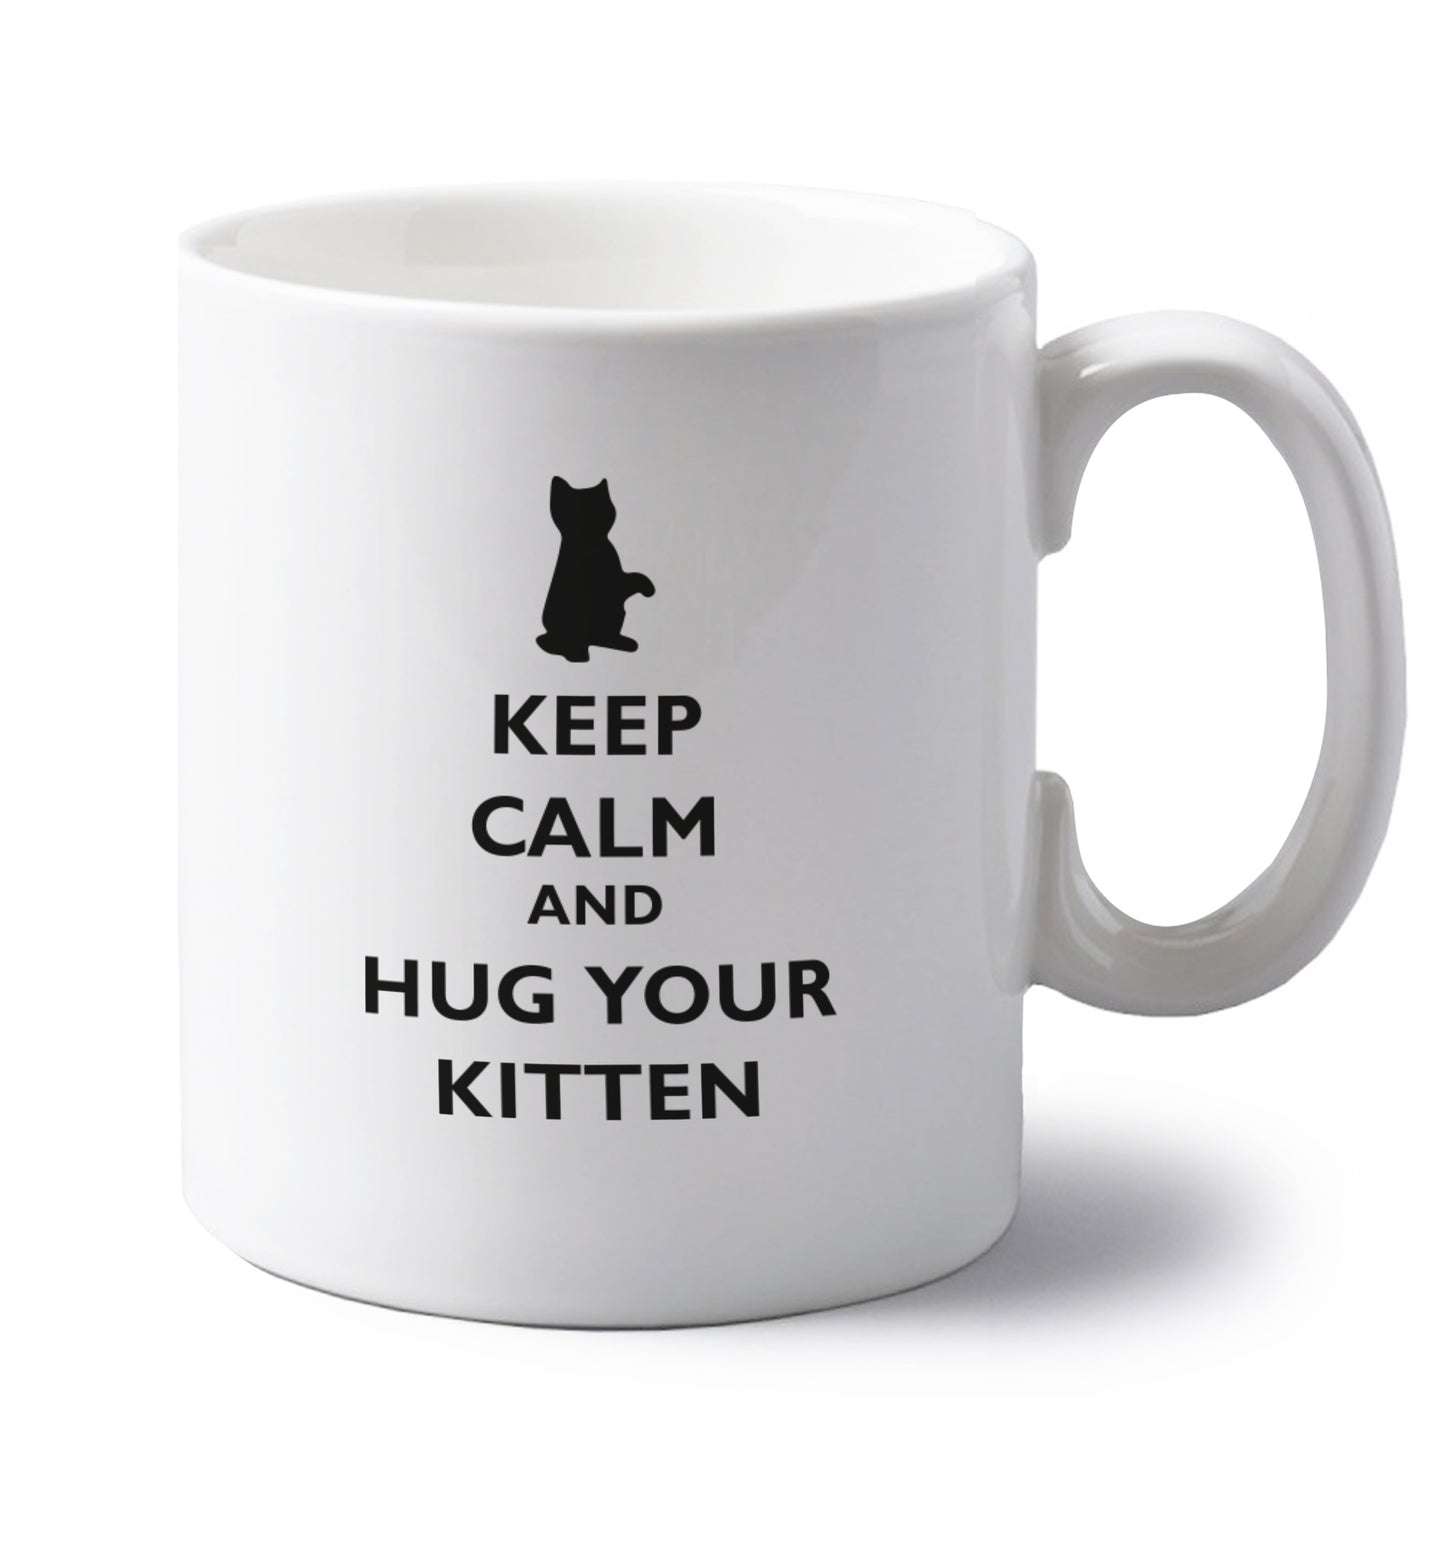 Keep calm and hug your kitten left handed white ceramic mug 